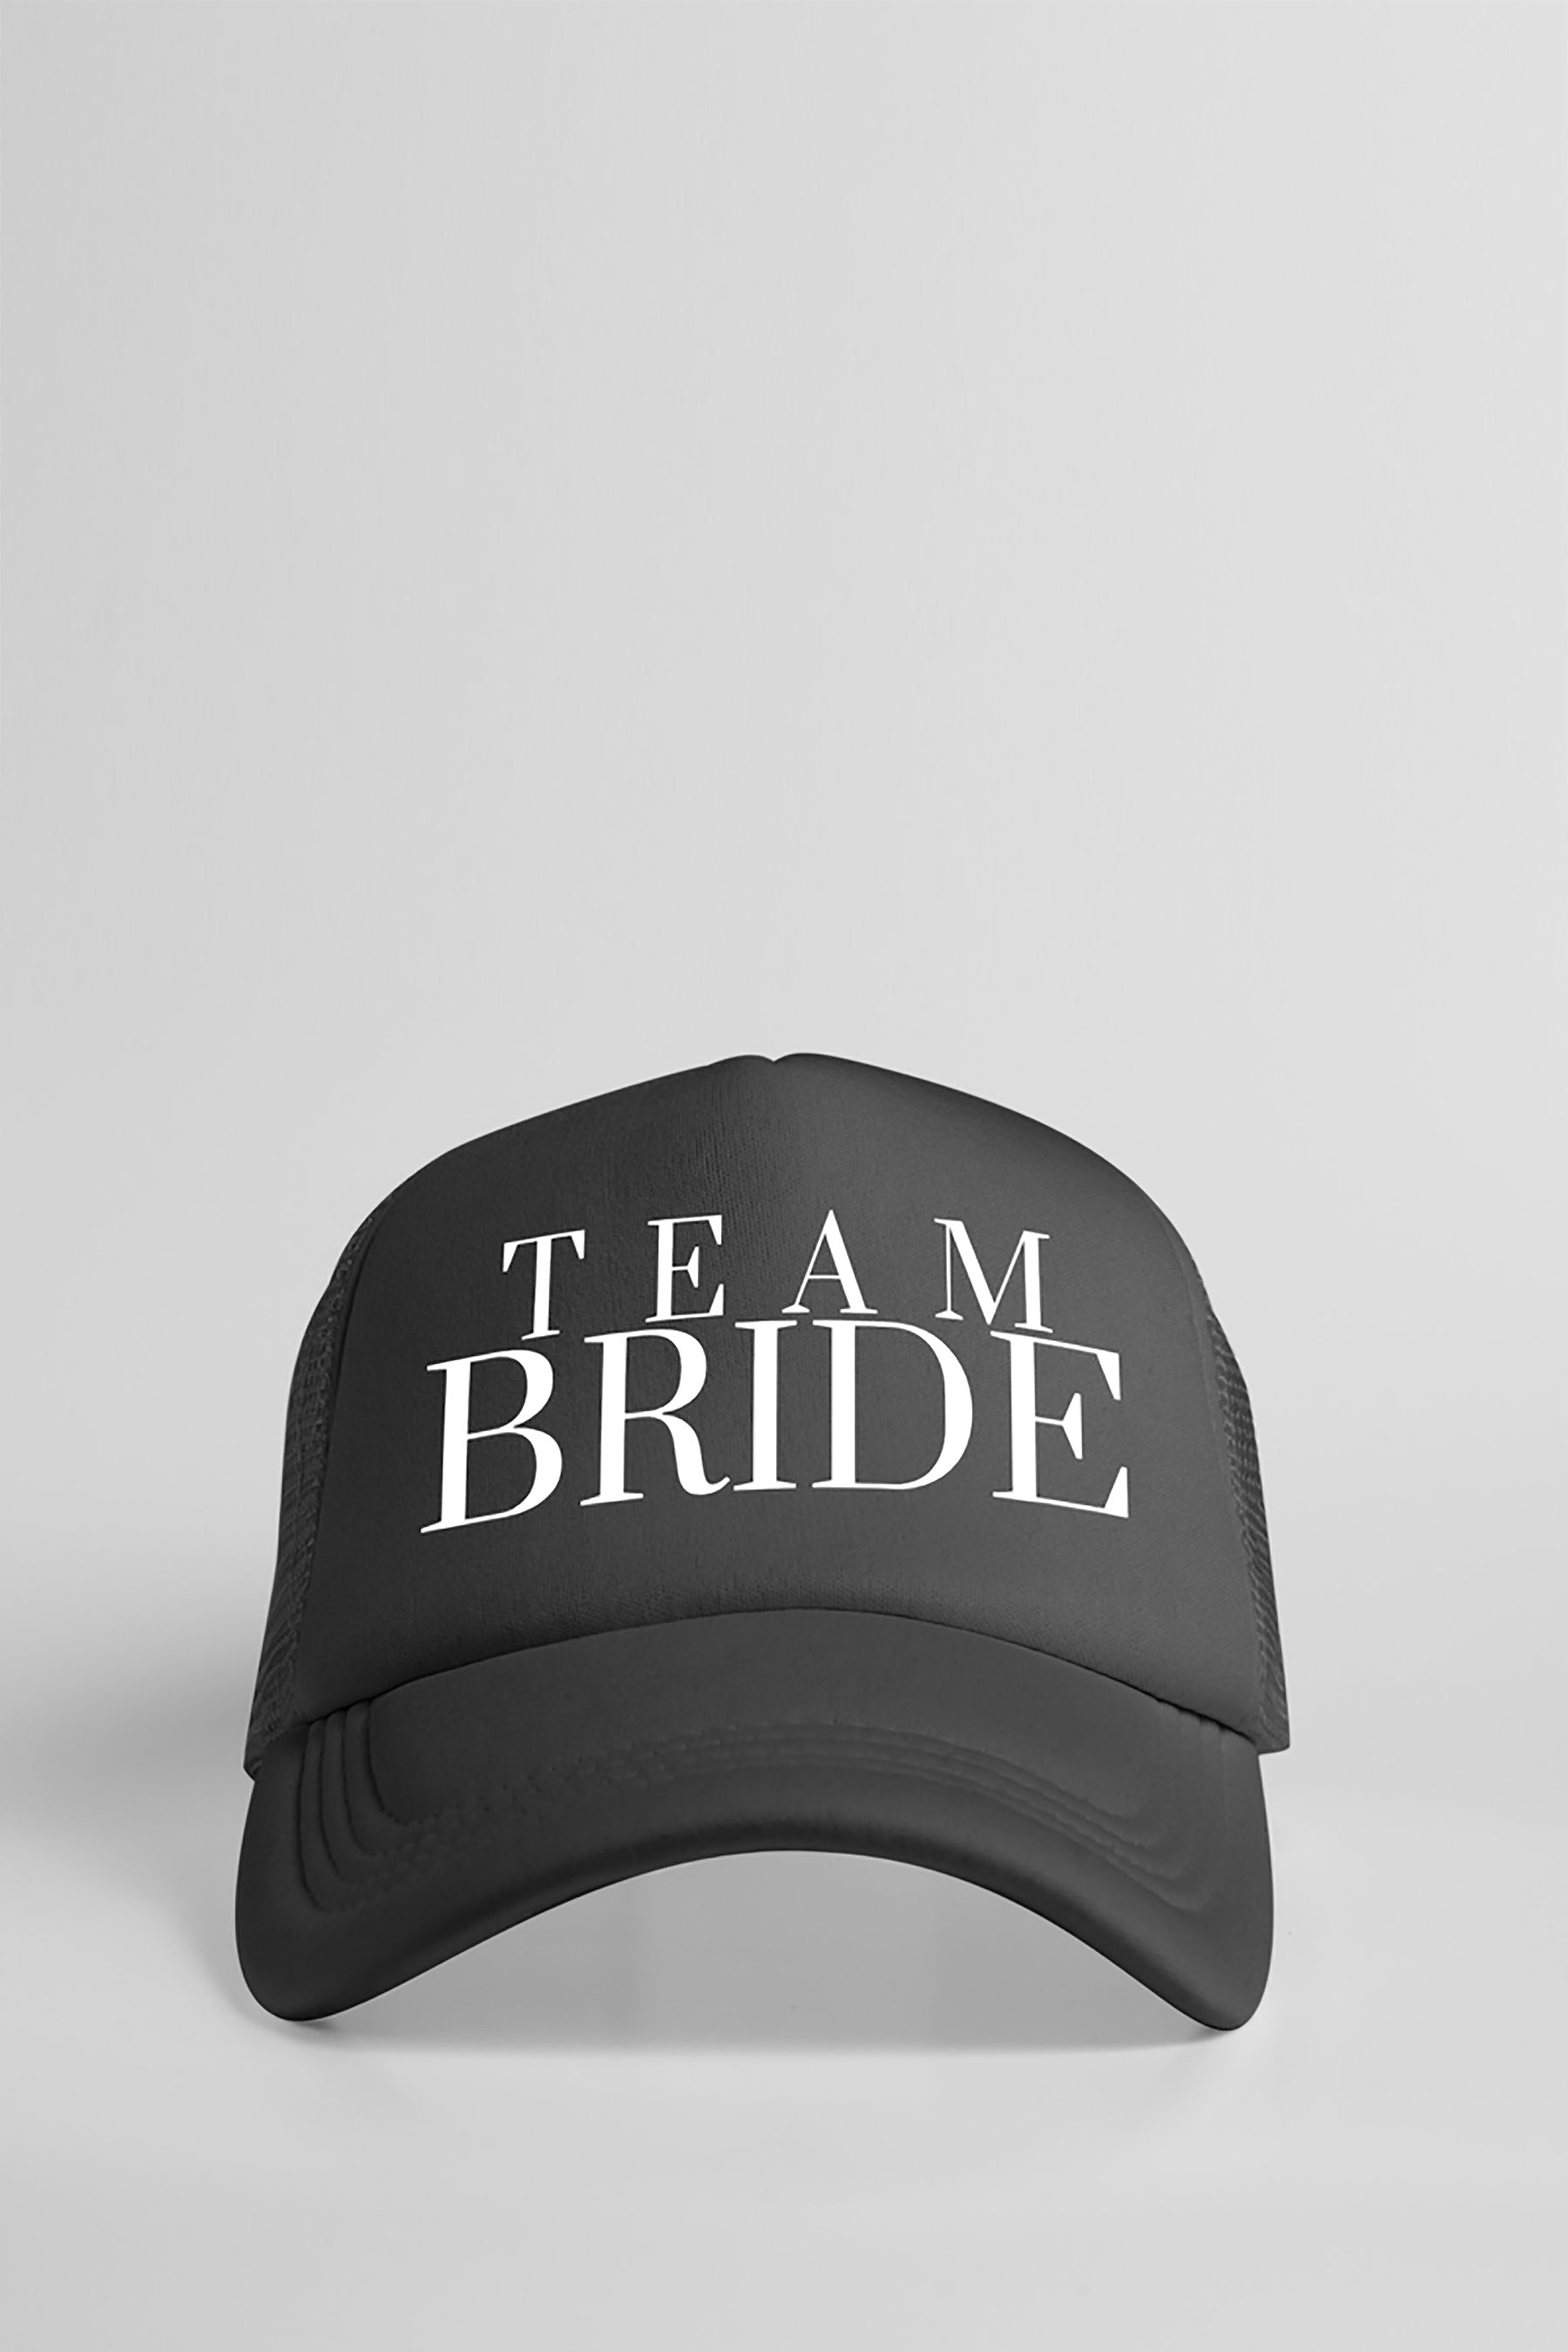 Team Bride Trucker Hat Black